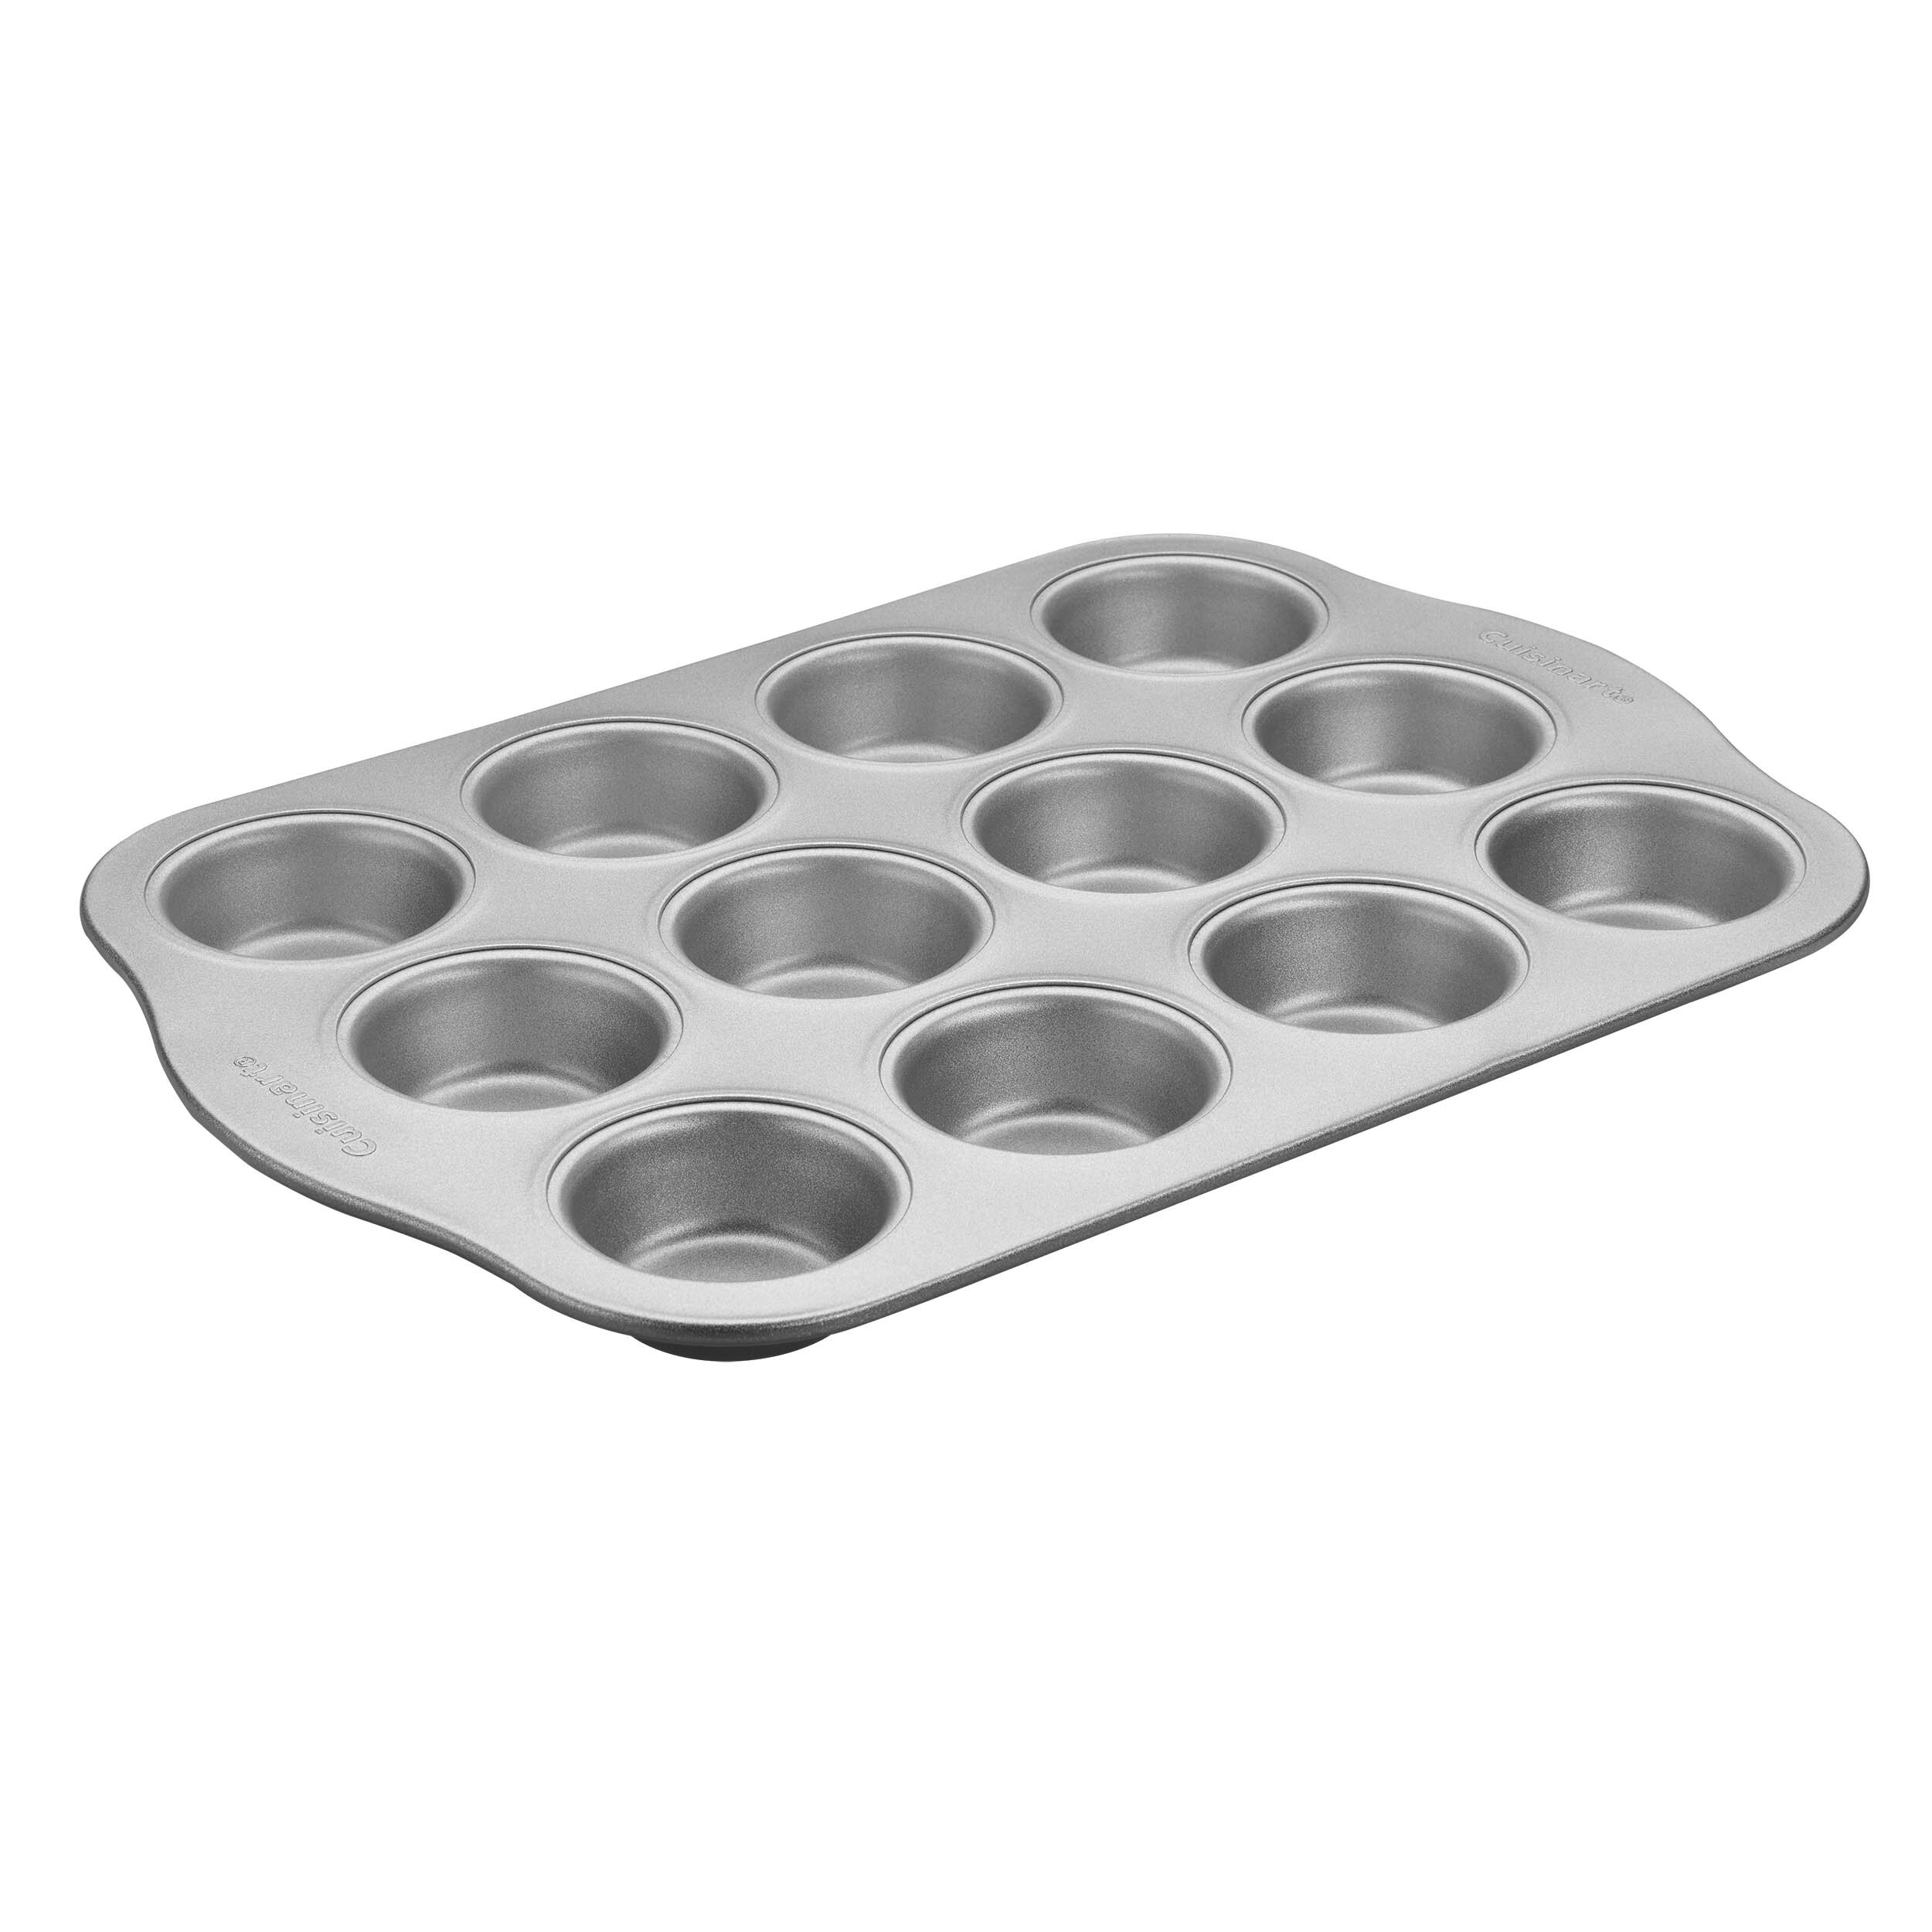 Cuisinart® 12-Cup Nonstick Muffin Pan